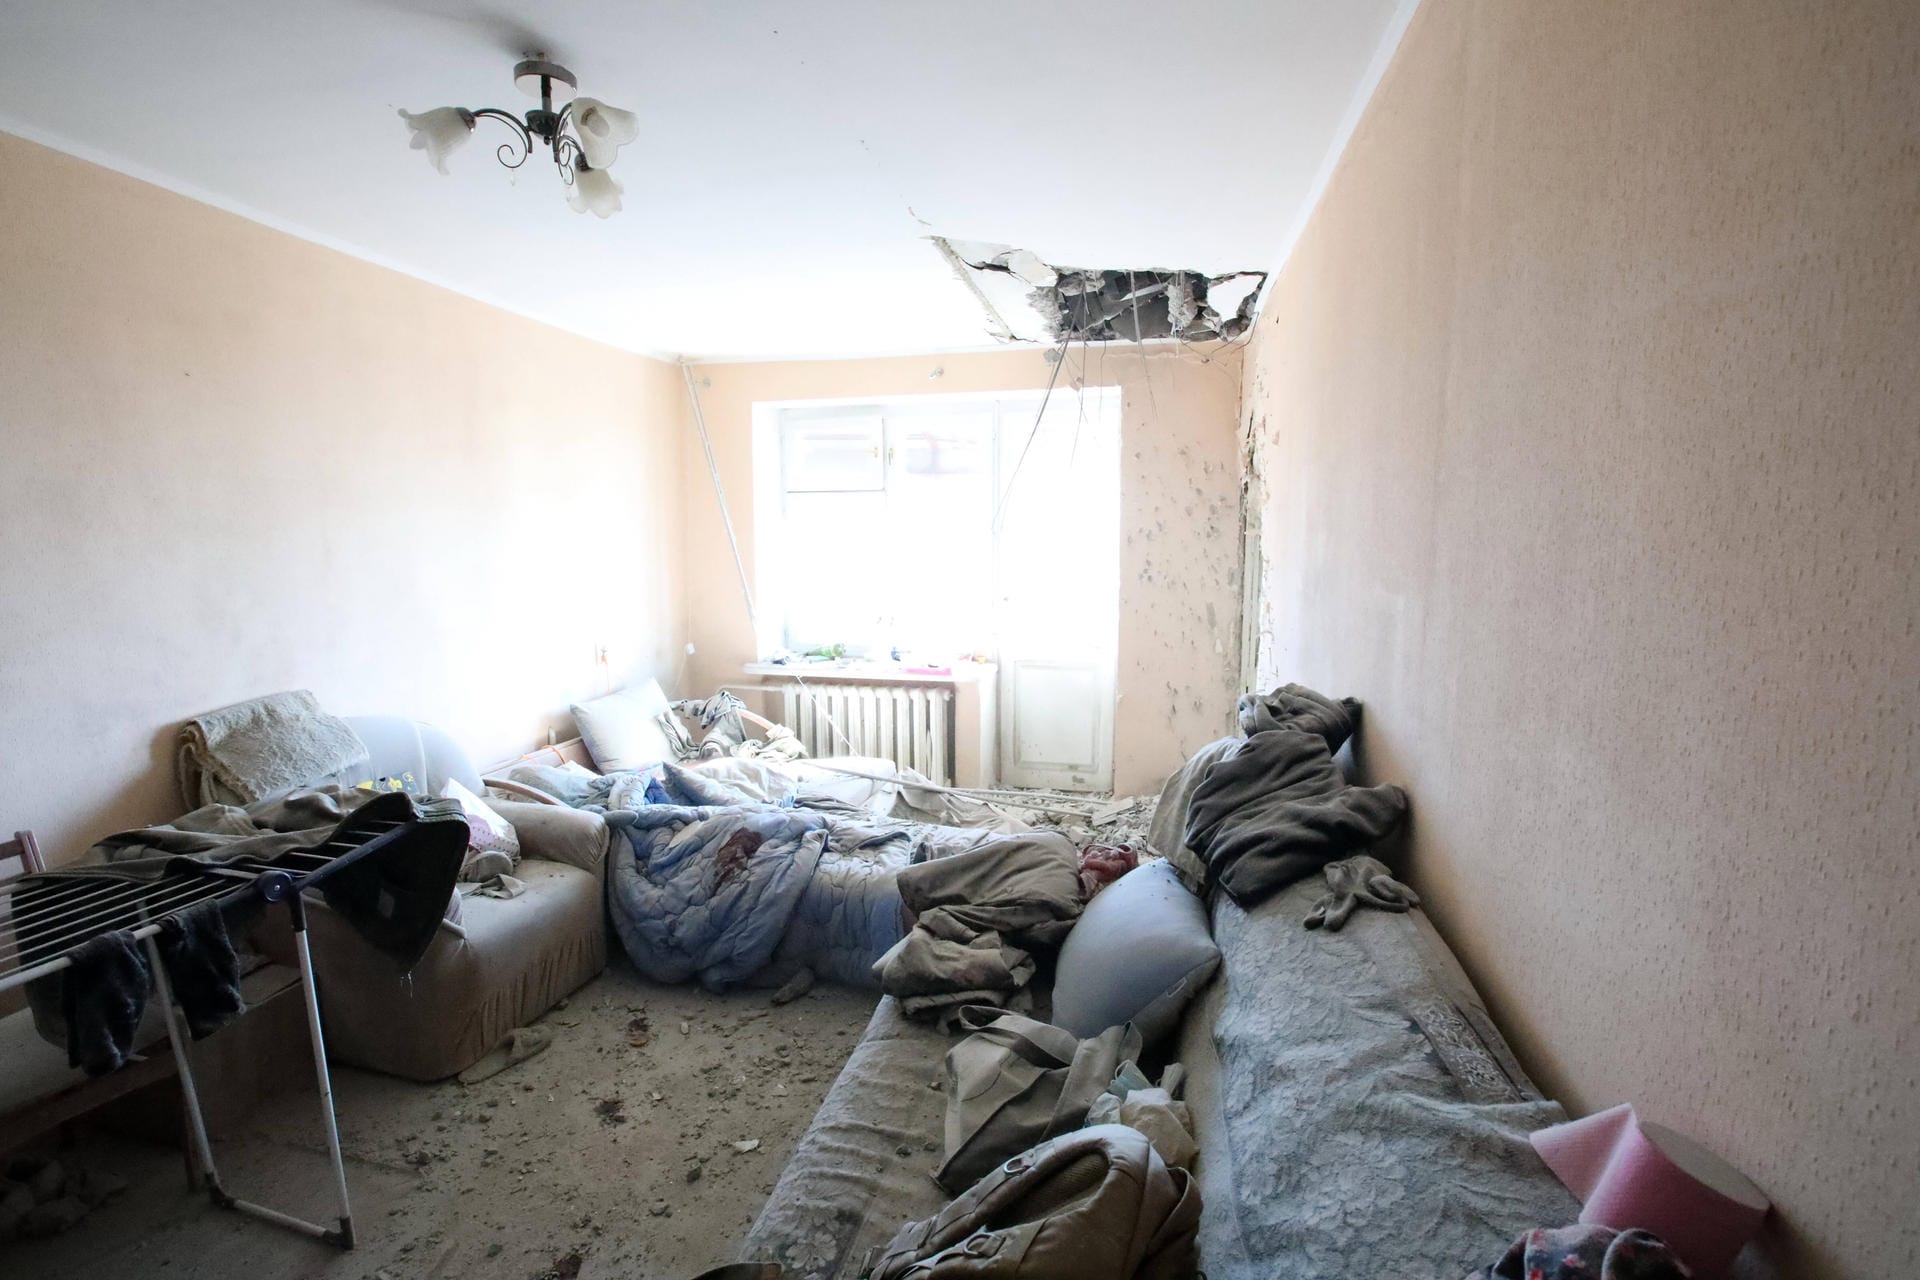 24. Februar: Russland greift die Ukraine an. Die Nato aktiviert Verteidigungspläne für Osteuropa, schließt aber eine militärische Unterstützung der Ukraine aus. Abgebildet: Schäden an einem Wohnhaus in Charkiw.